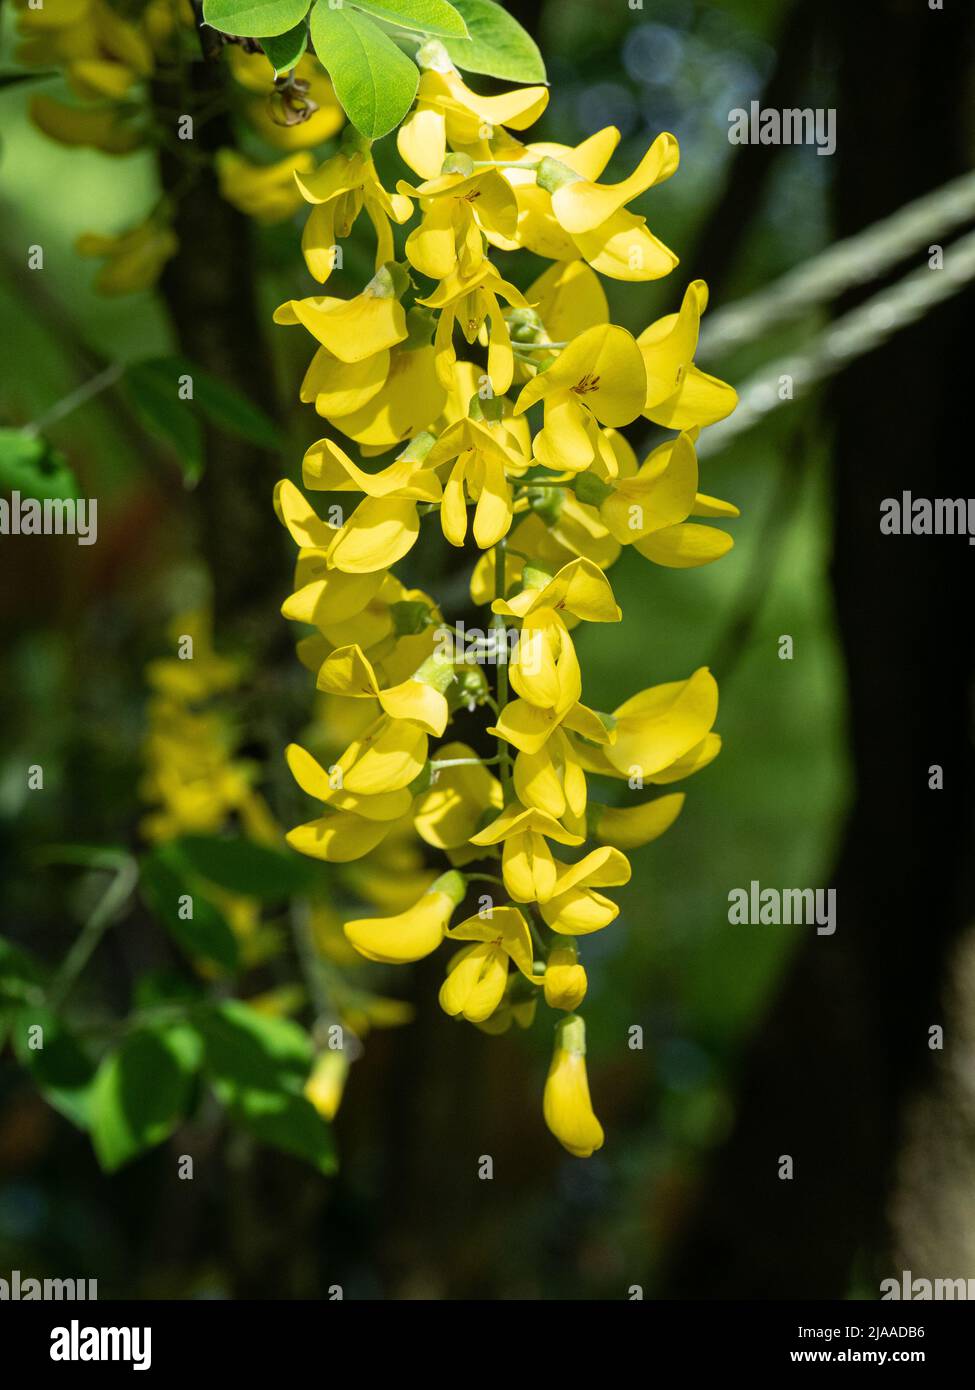 Eine Nahaufnahme der leuchtend gelben hängenden Blumen des beliebten, aber giftigen Laburnum- oder Golden-Regenbaums Stockfoto